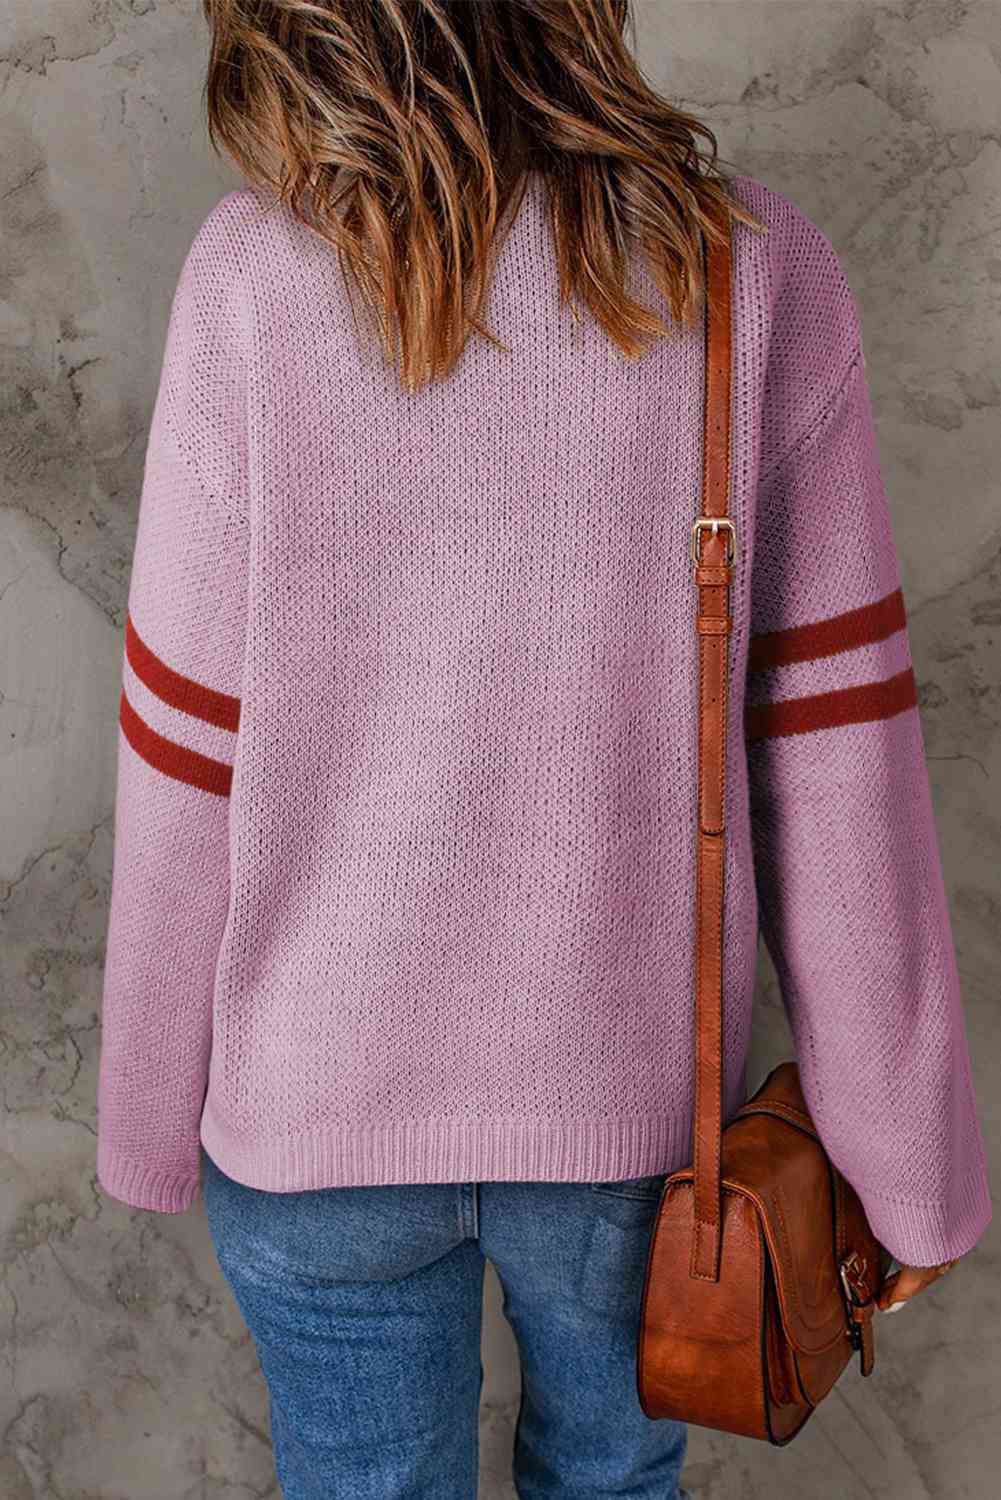 TEEK - Arm Stripe Heart Sweater SWEATER TEEK Trend   